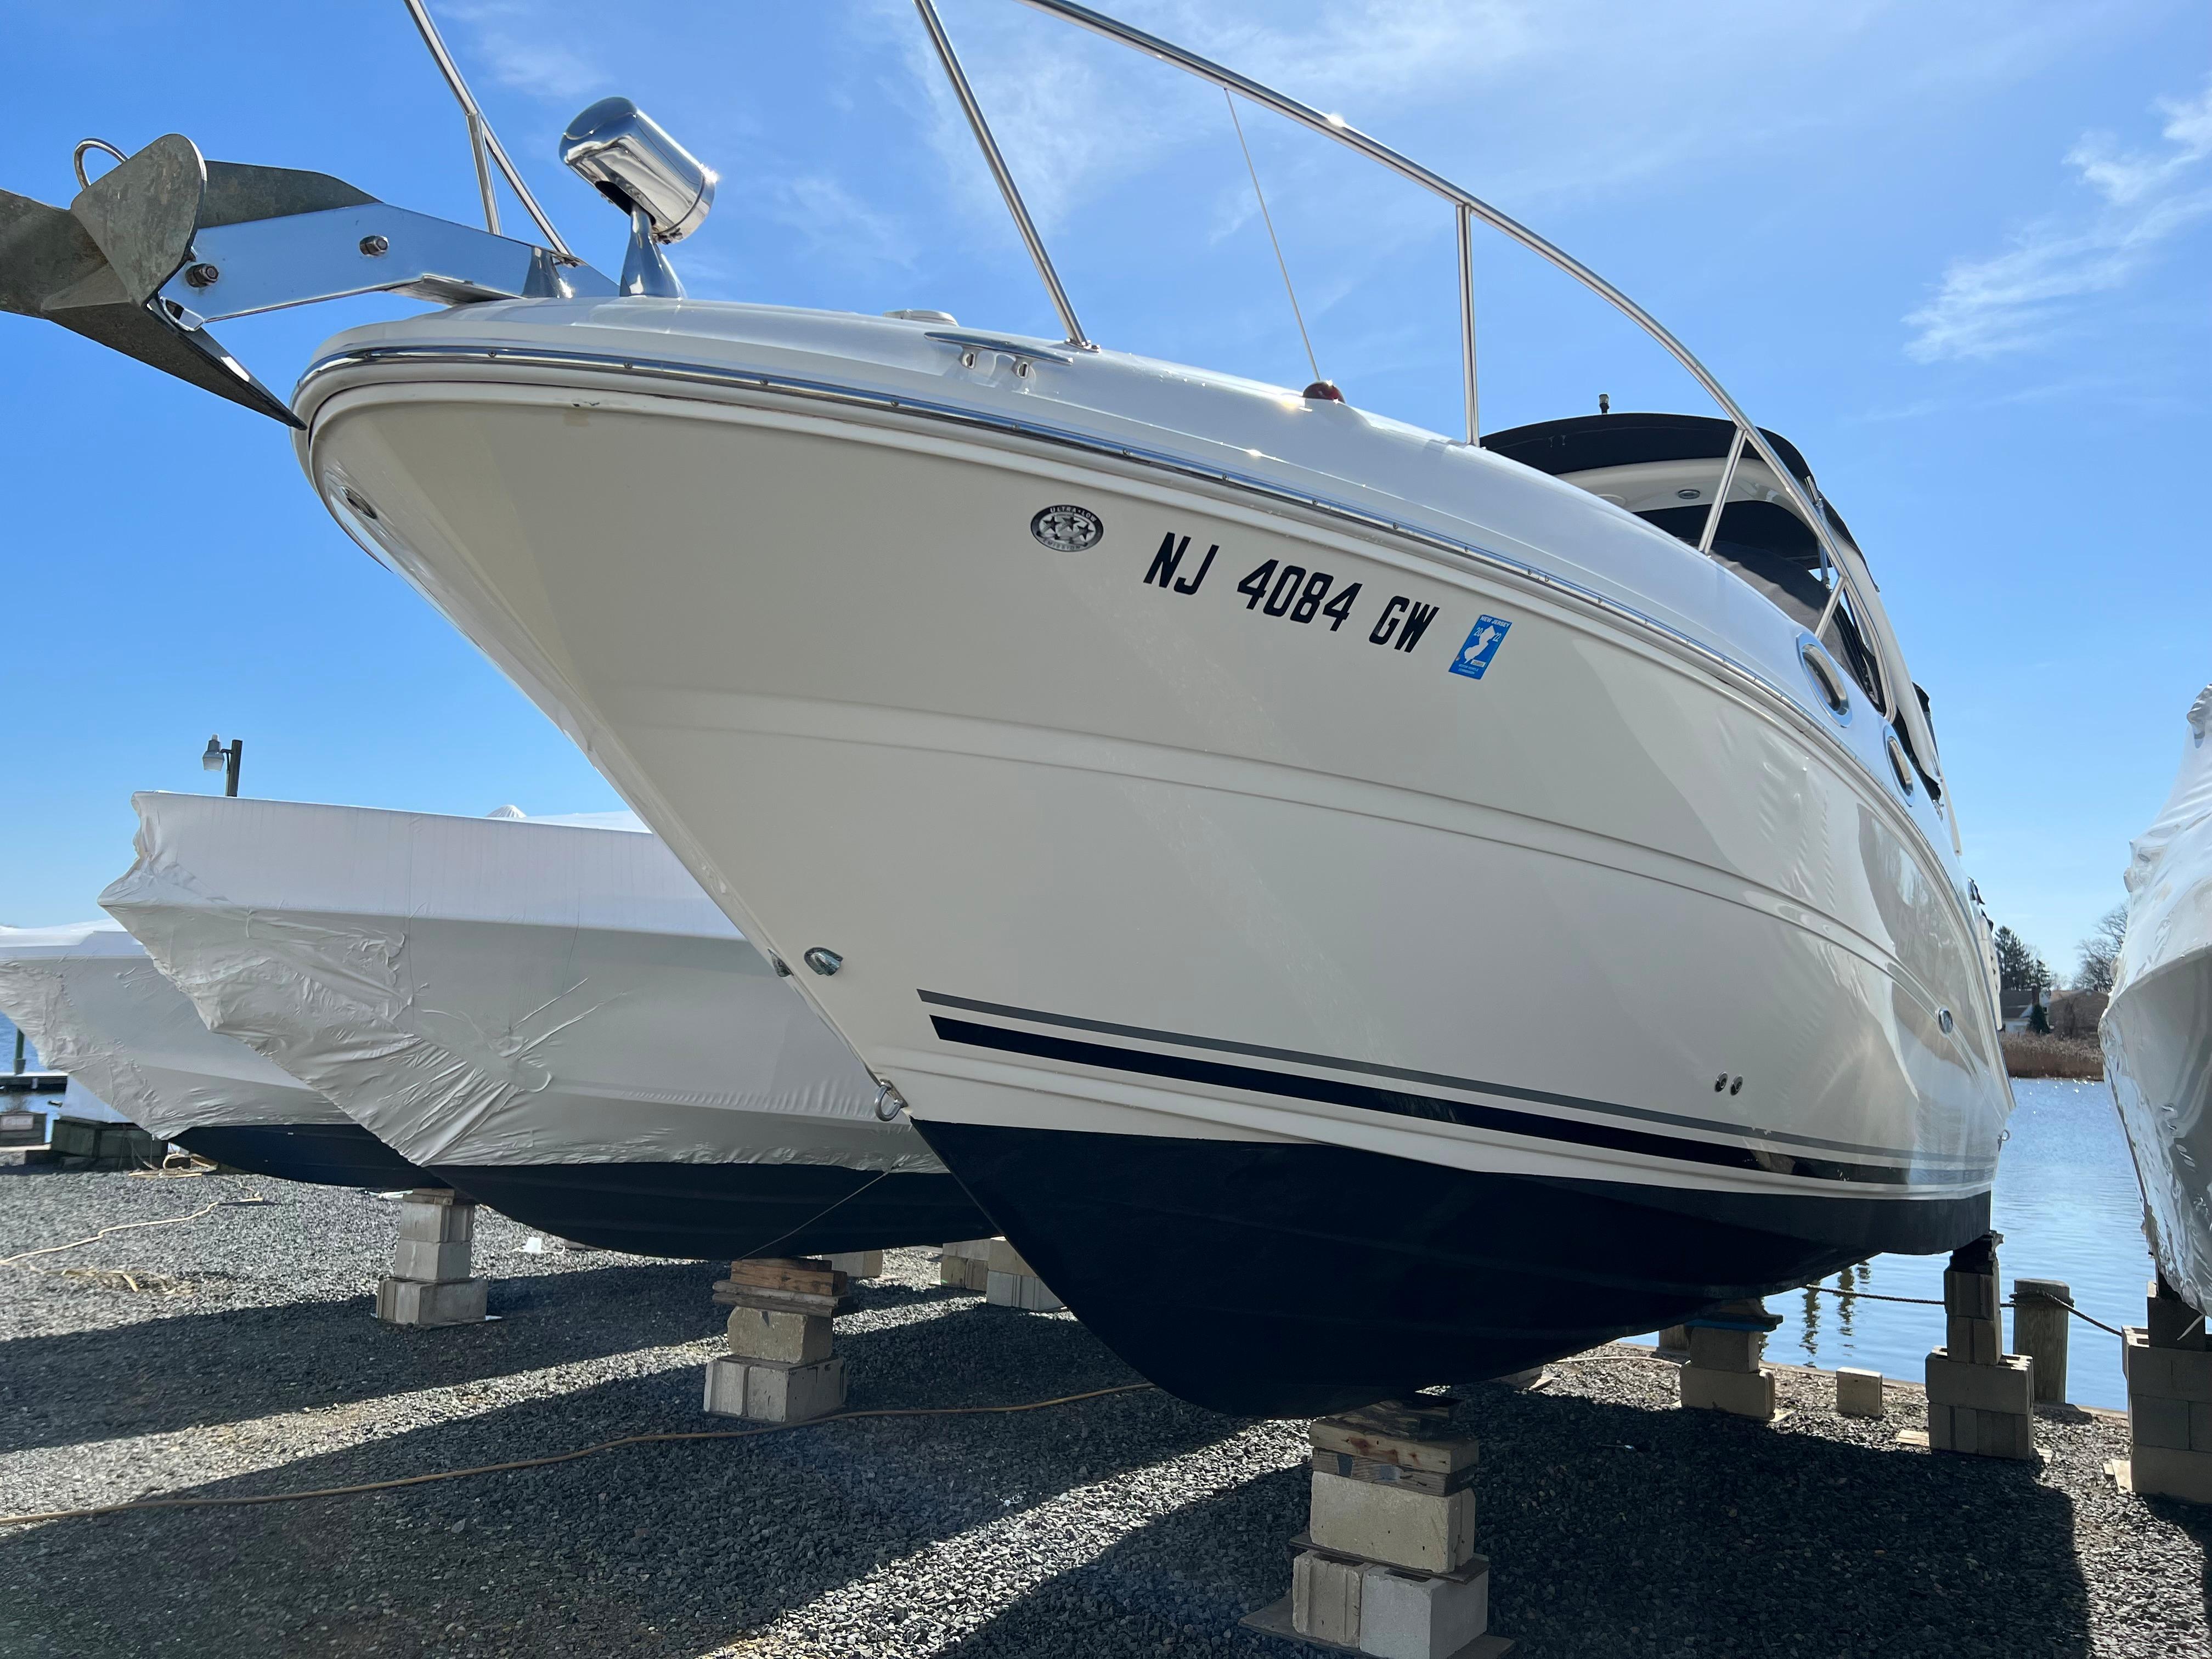 NJ 6869 DM Knot 10 Yacht Sales